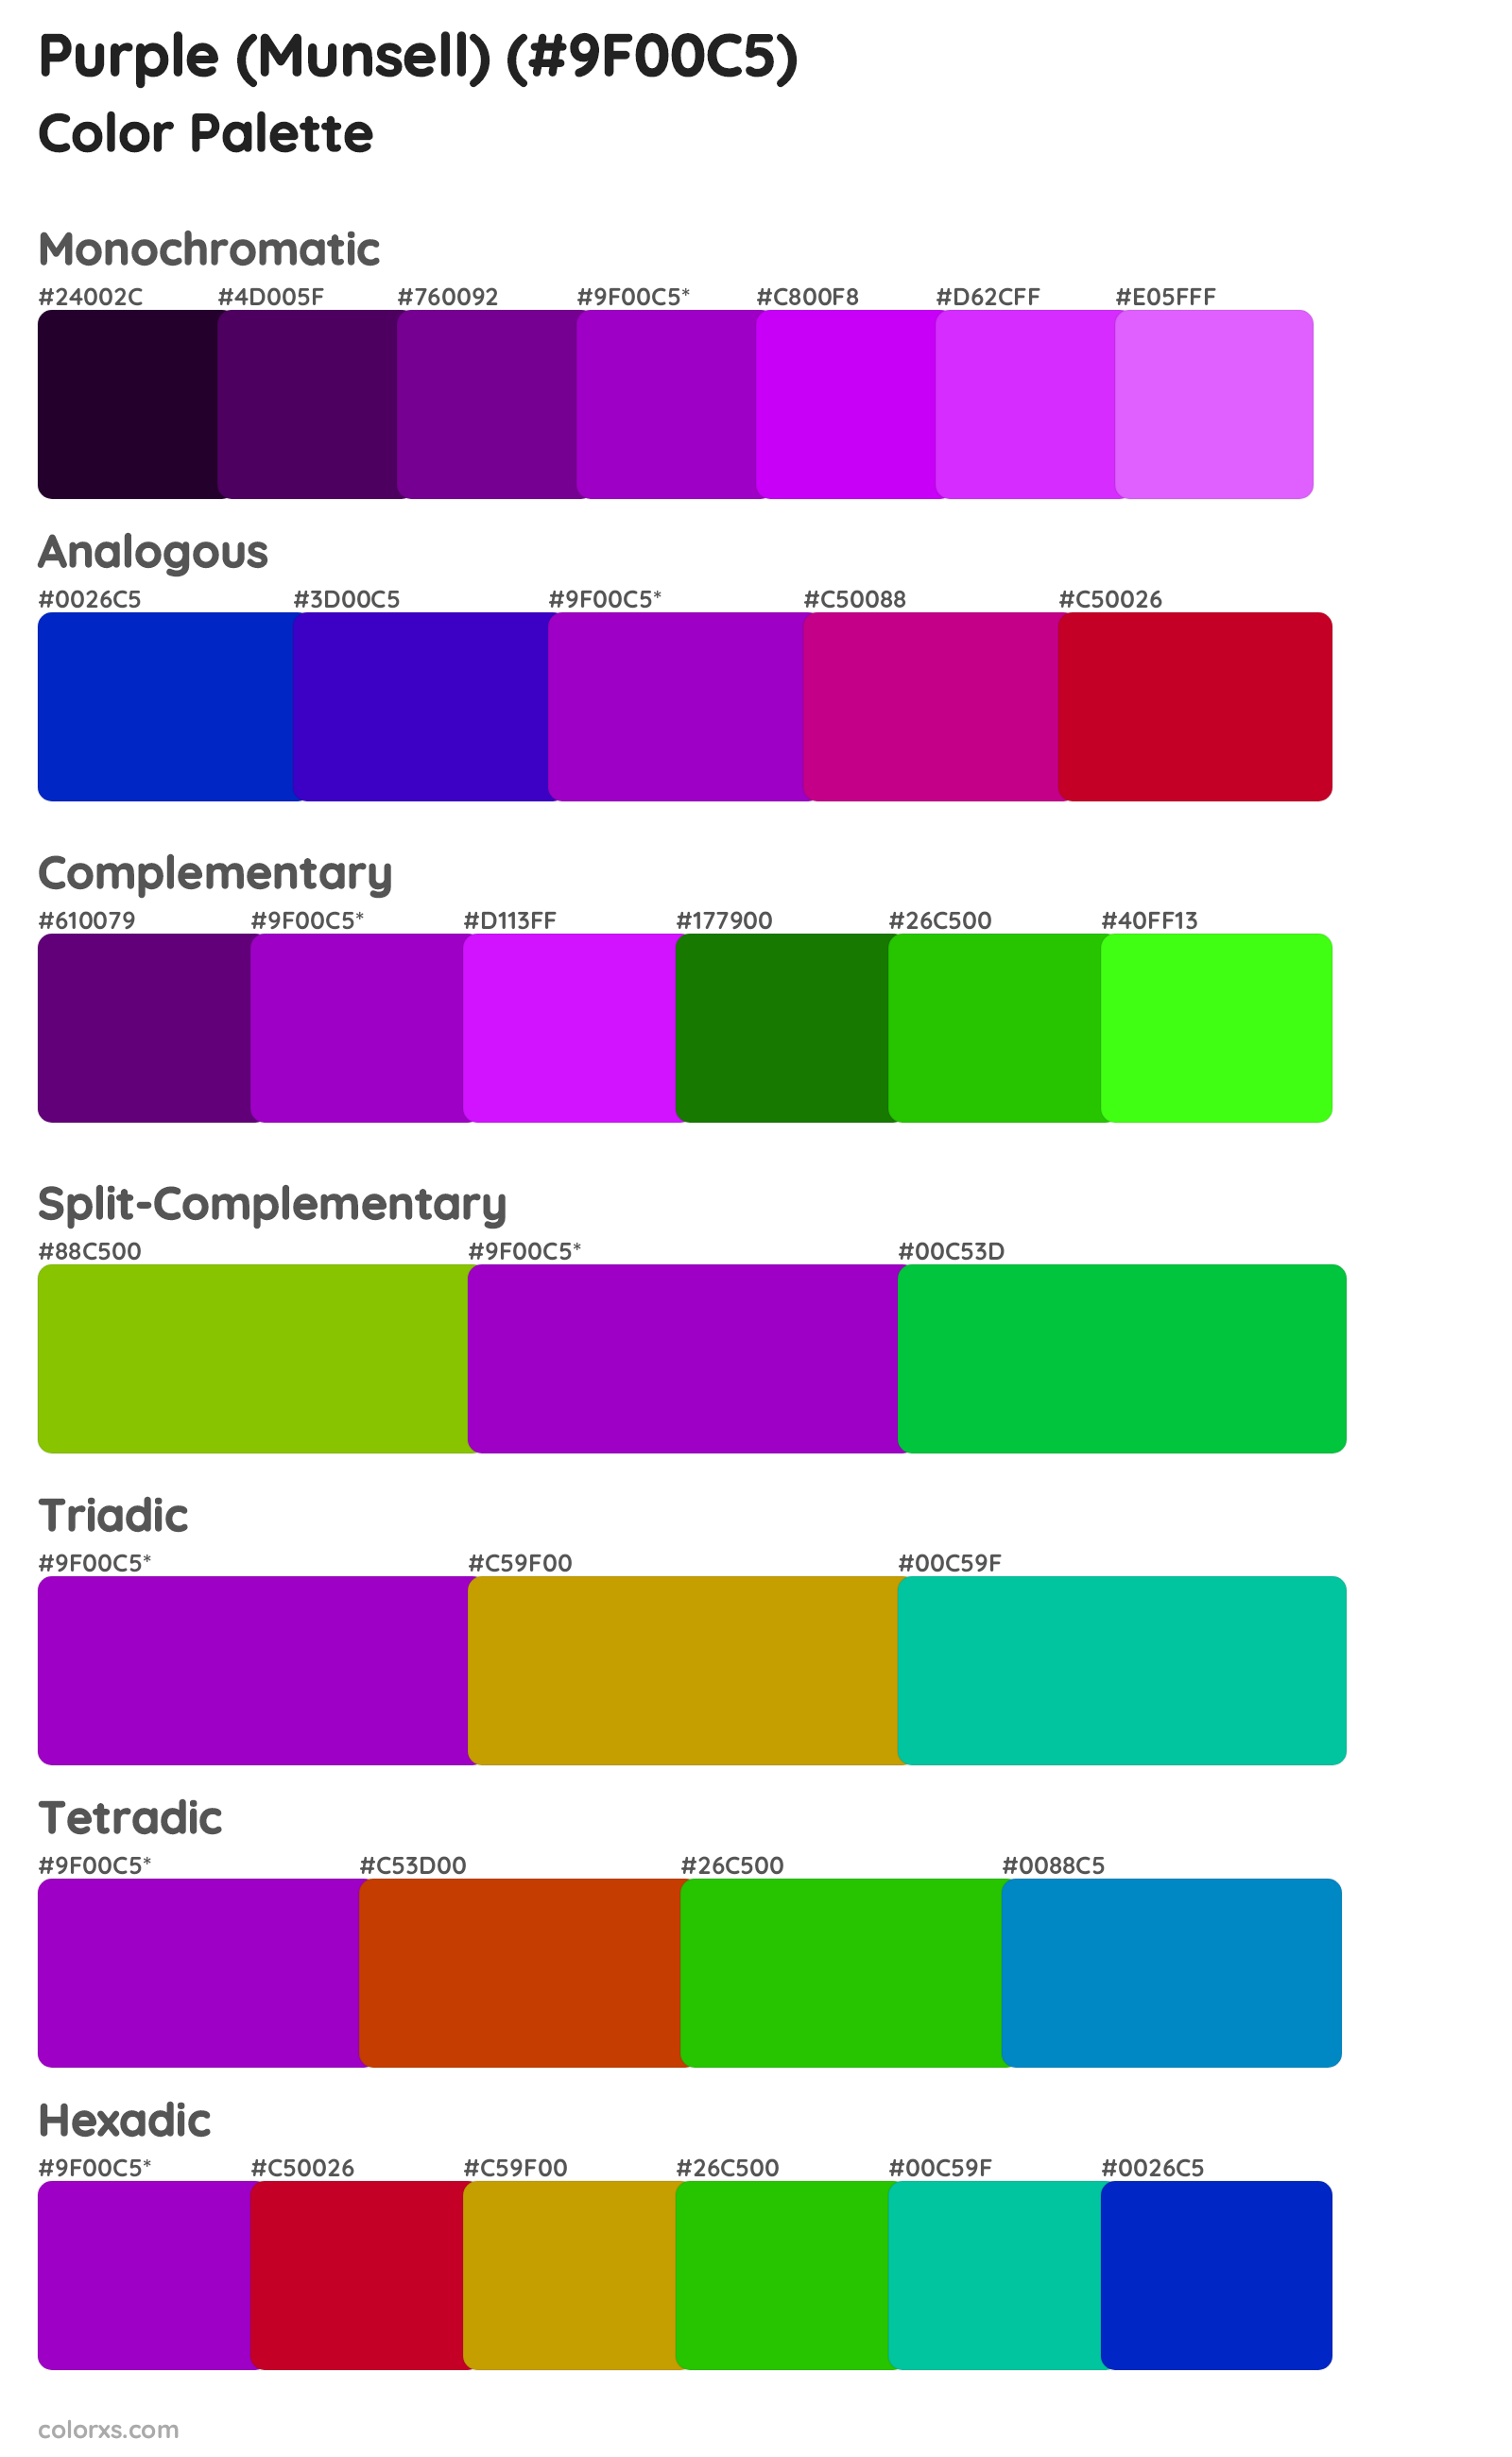 Purple (Munsell) Color Scheme Palettes